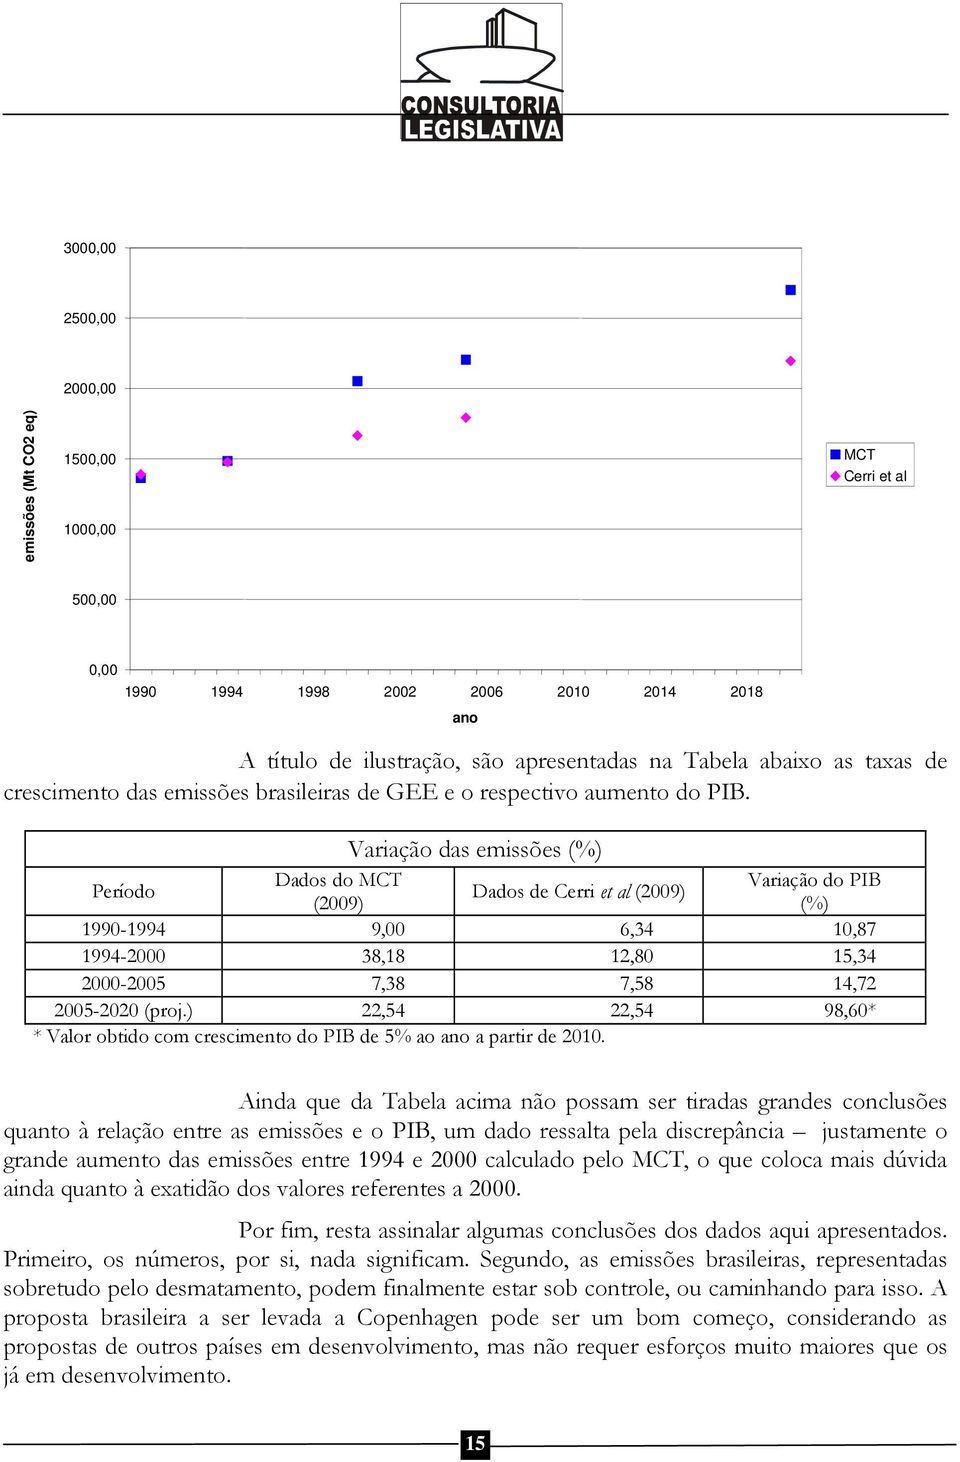 Variação das emissões (%) Período Dados do MCT Variação do PIB Dados de Cerri et al (2009) (2009) (%) 1990-1994 9,00 6,34 10,87 1994-2000 38,18 12,80 15,34 2000-2005 7,38 7,58 14,72 2005-2020 (proj.